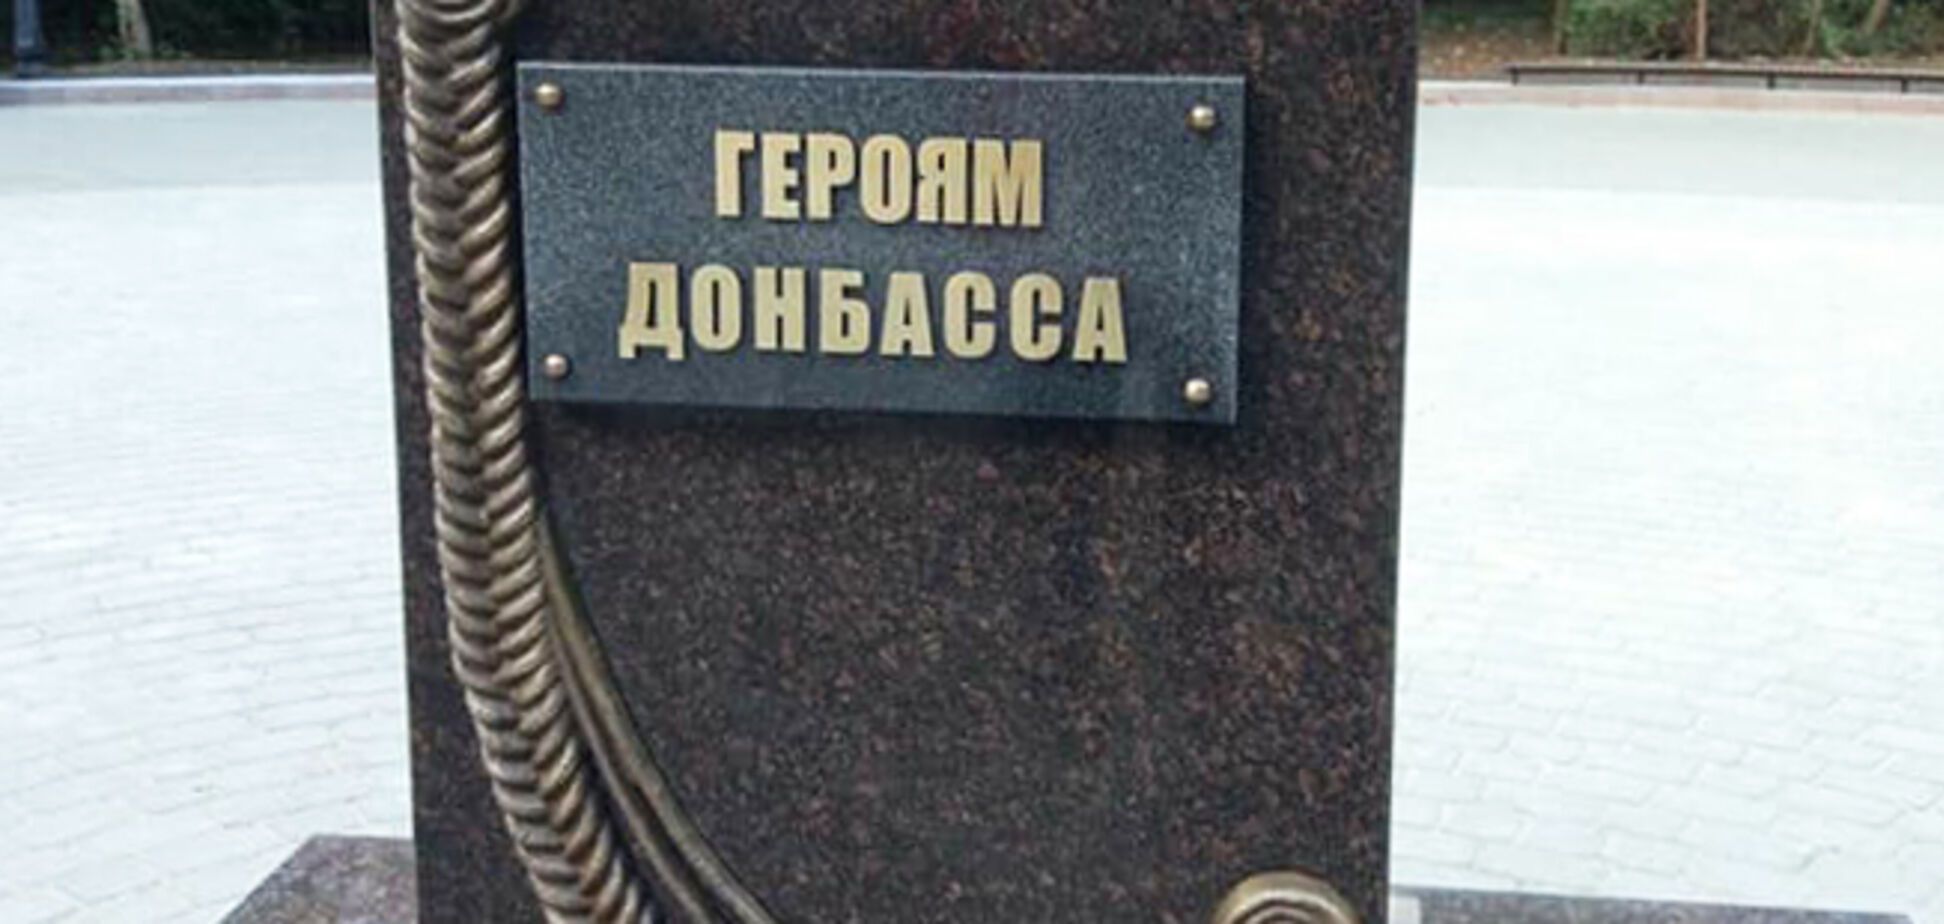 Памятник 'героям Донбасса' в Ростове: Голышев пояснил назначение 'чучела'